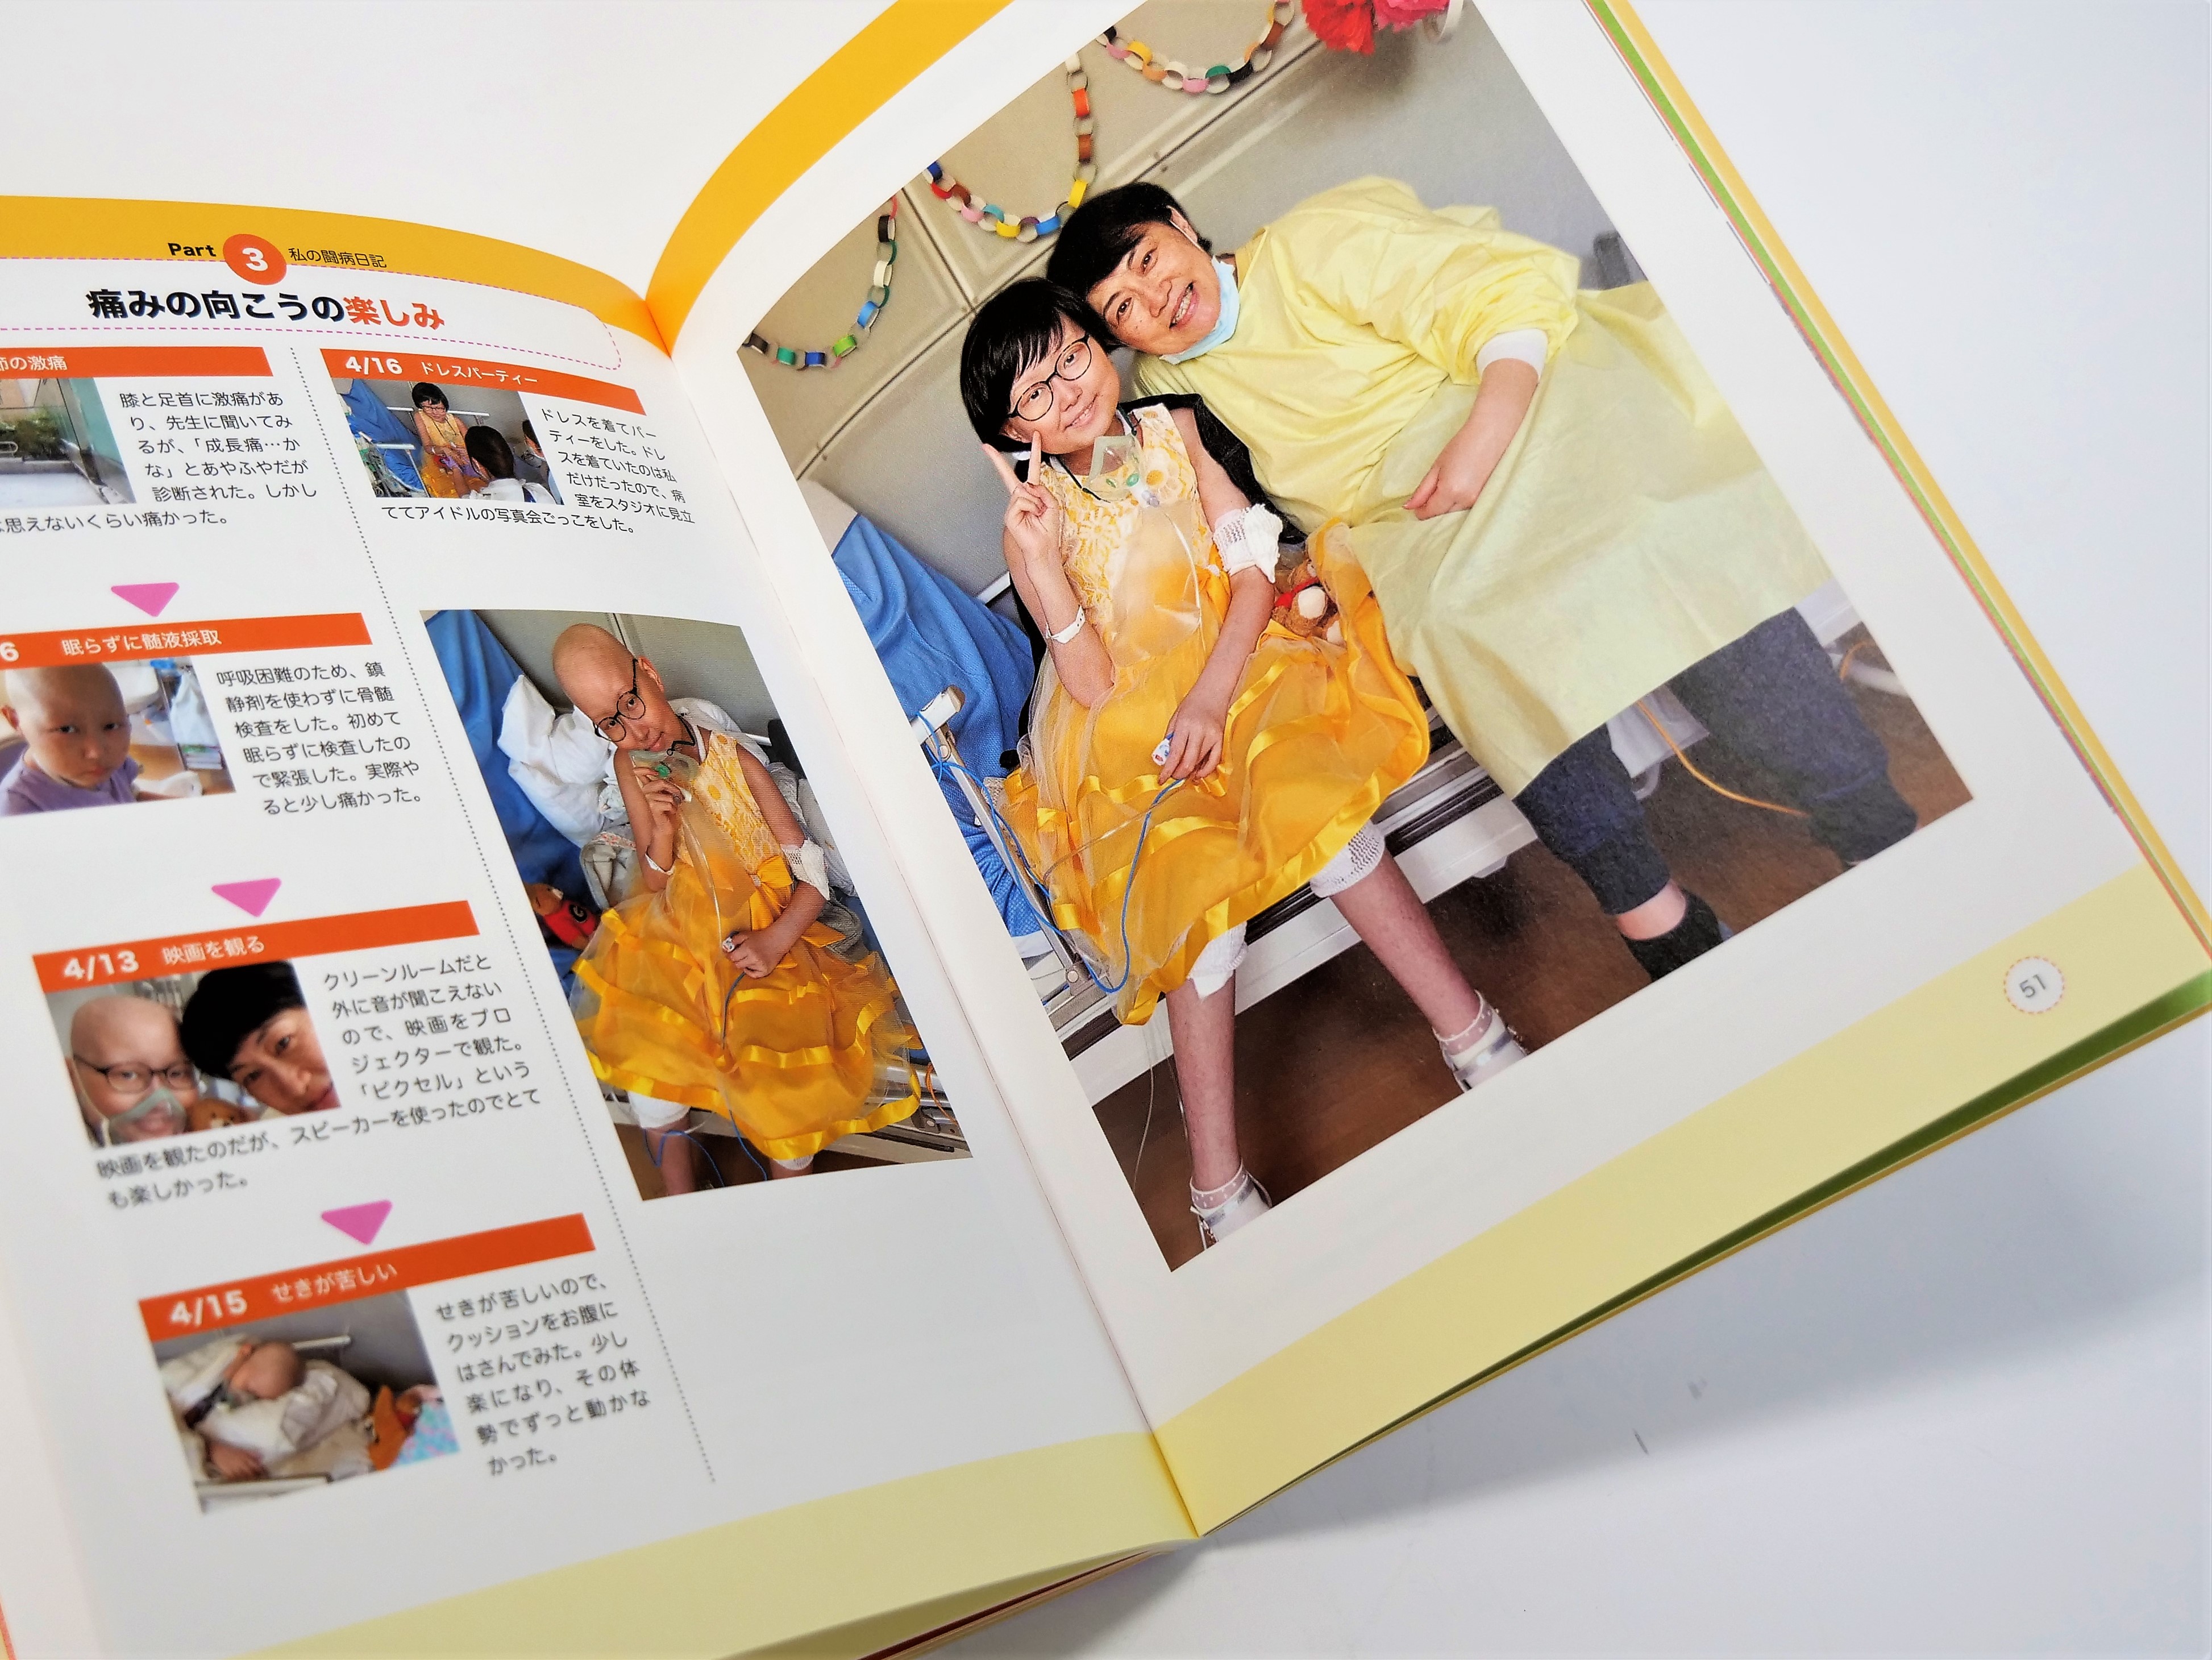 あなたの「当たり前」に憧れている子どもがいます——闘病中のプライベート写真は明るい印象に。 - 東京印書館 |  写真集・展覧会図録・絵本・その他印刷物の企画制作| TOKYO INSHOKAN PRINTING CO.